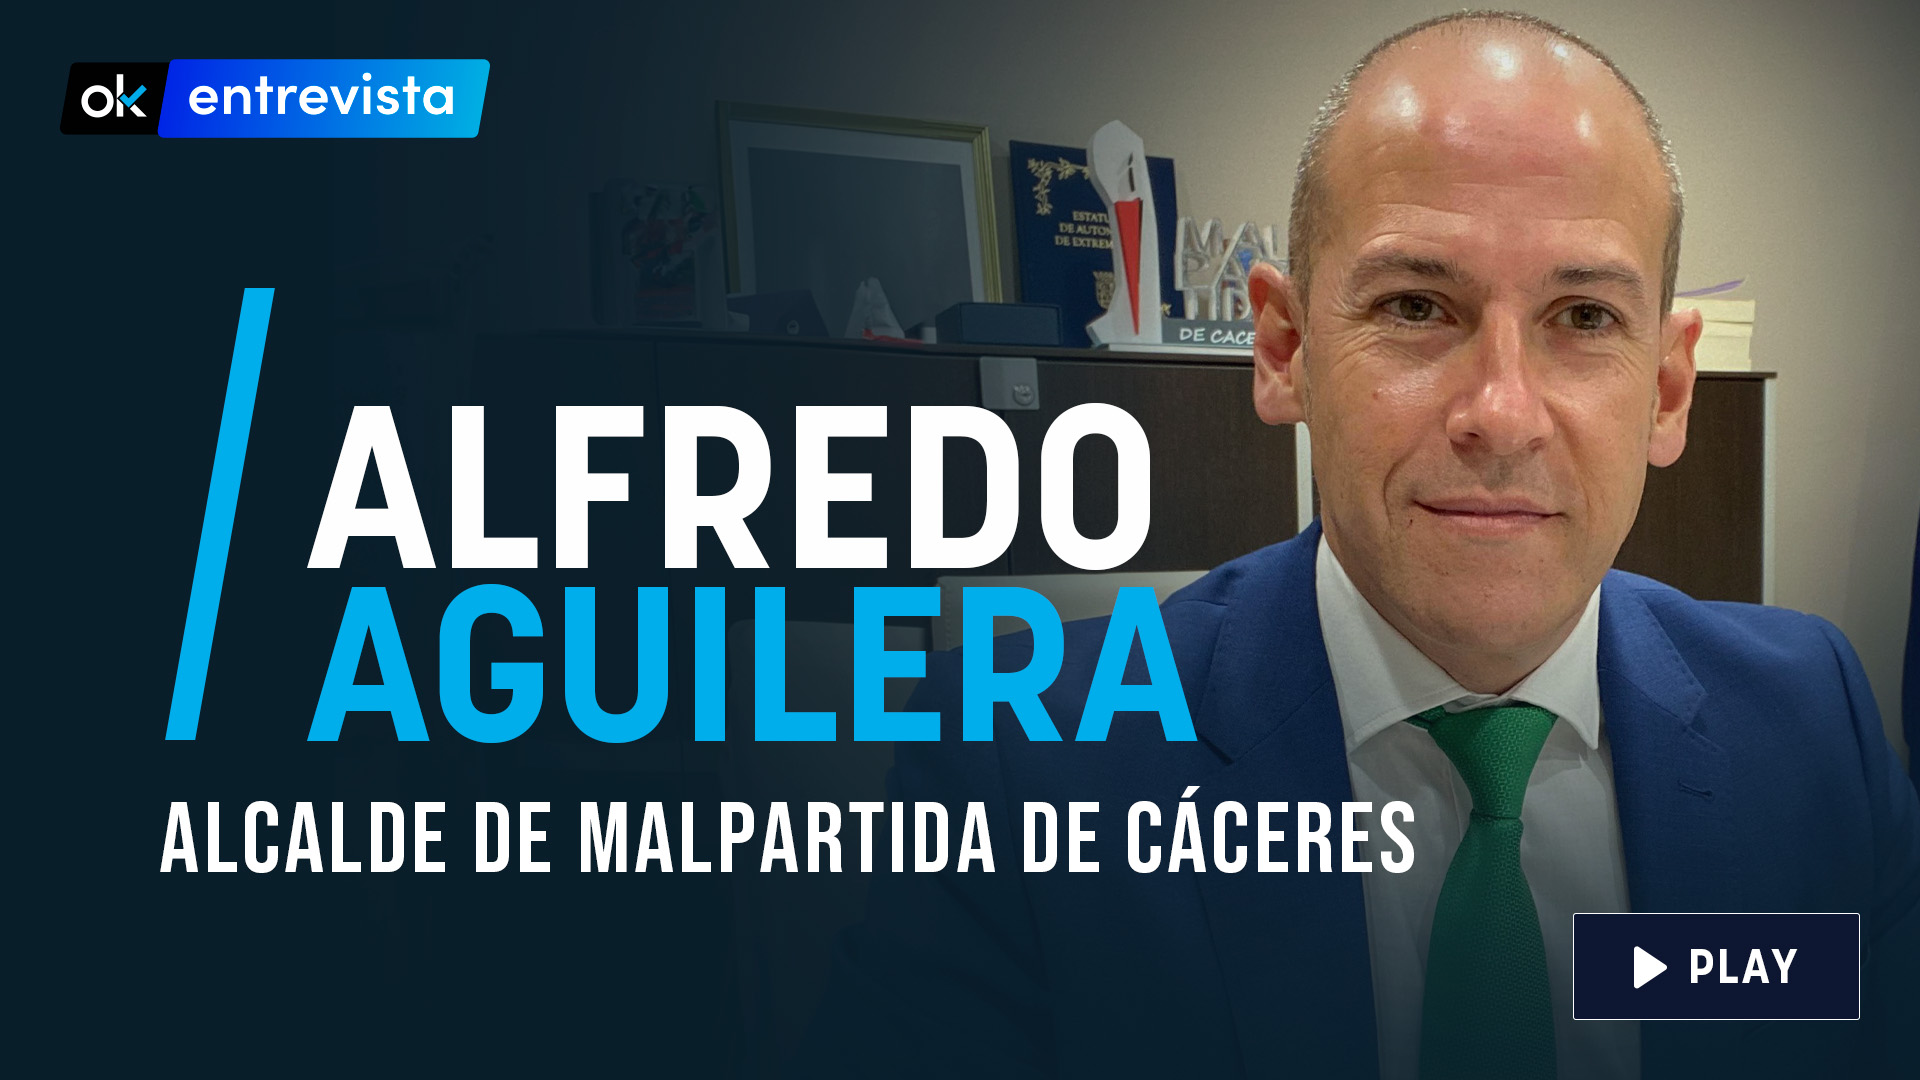 Entrevista a Alfredo Aguilera, alcalde Malpartida de Cáceres